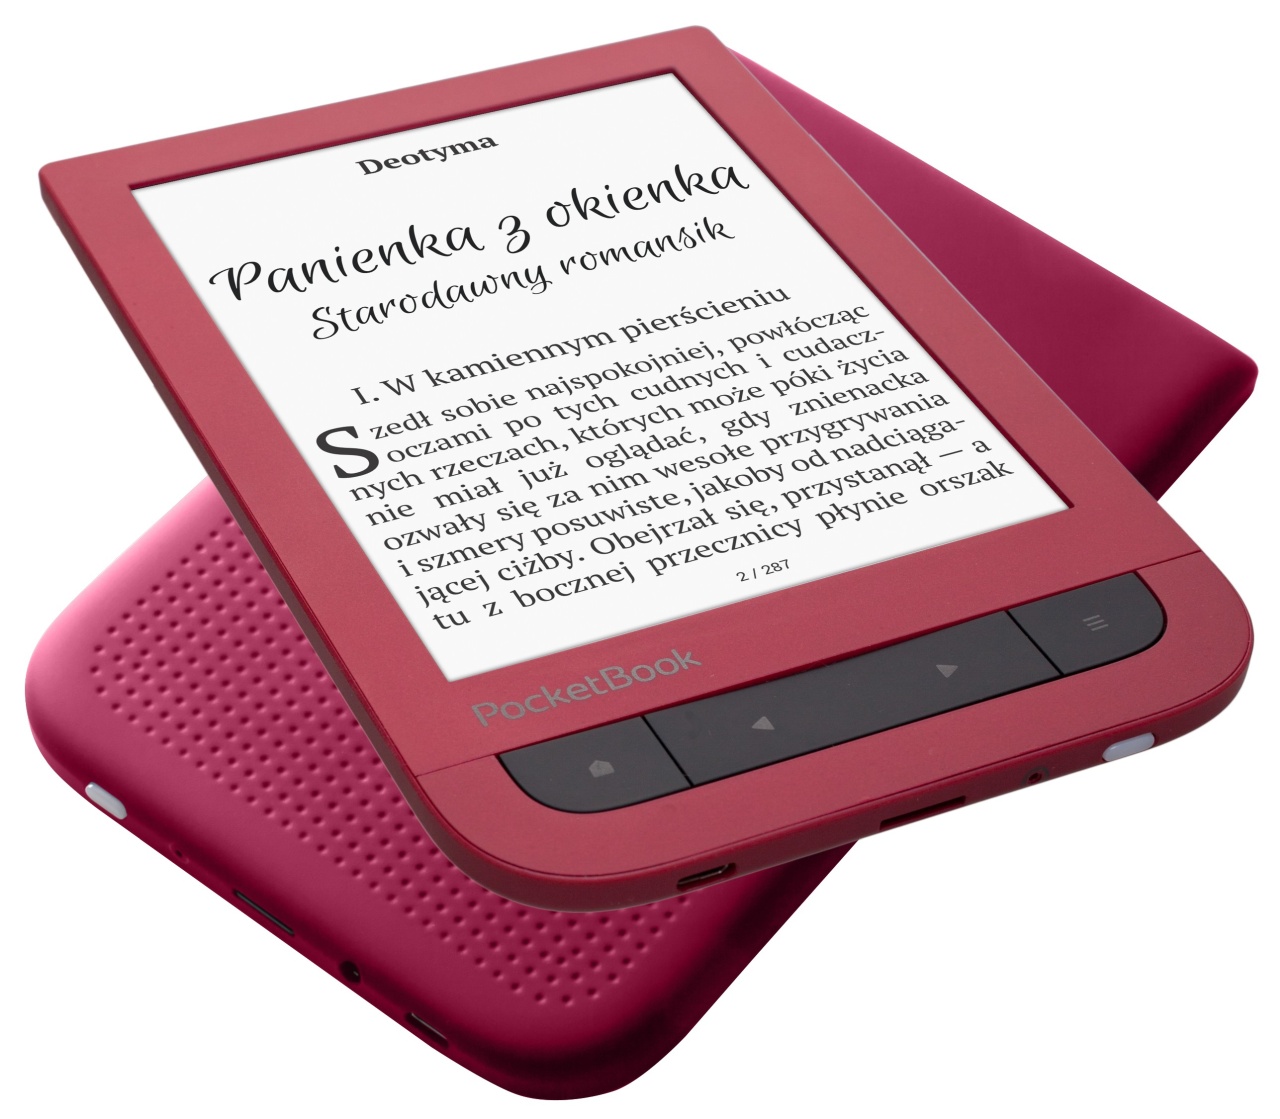 pocketbook-touch-hd-2-w-nowej-wersji-ruby-red-cyfranek-cyfrowe-czytanie